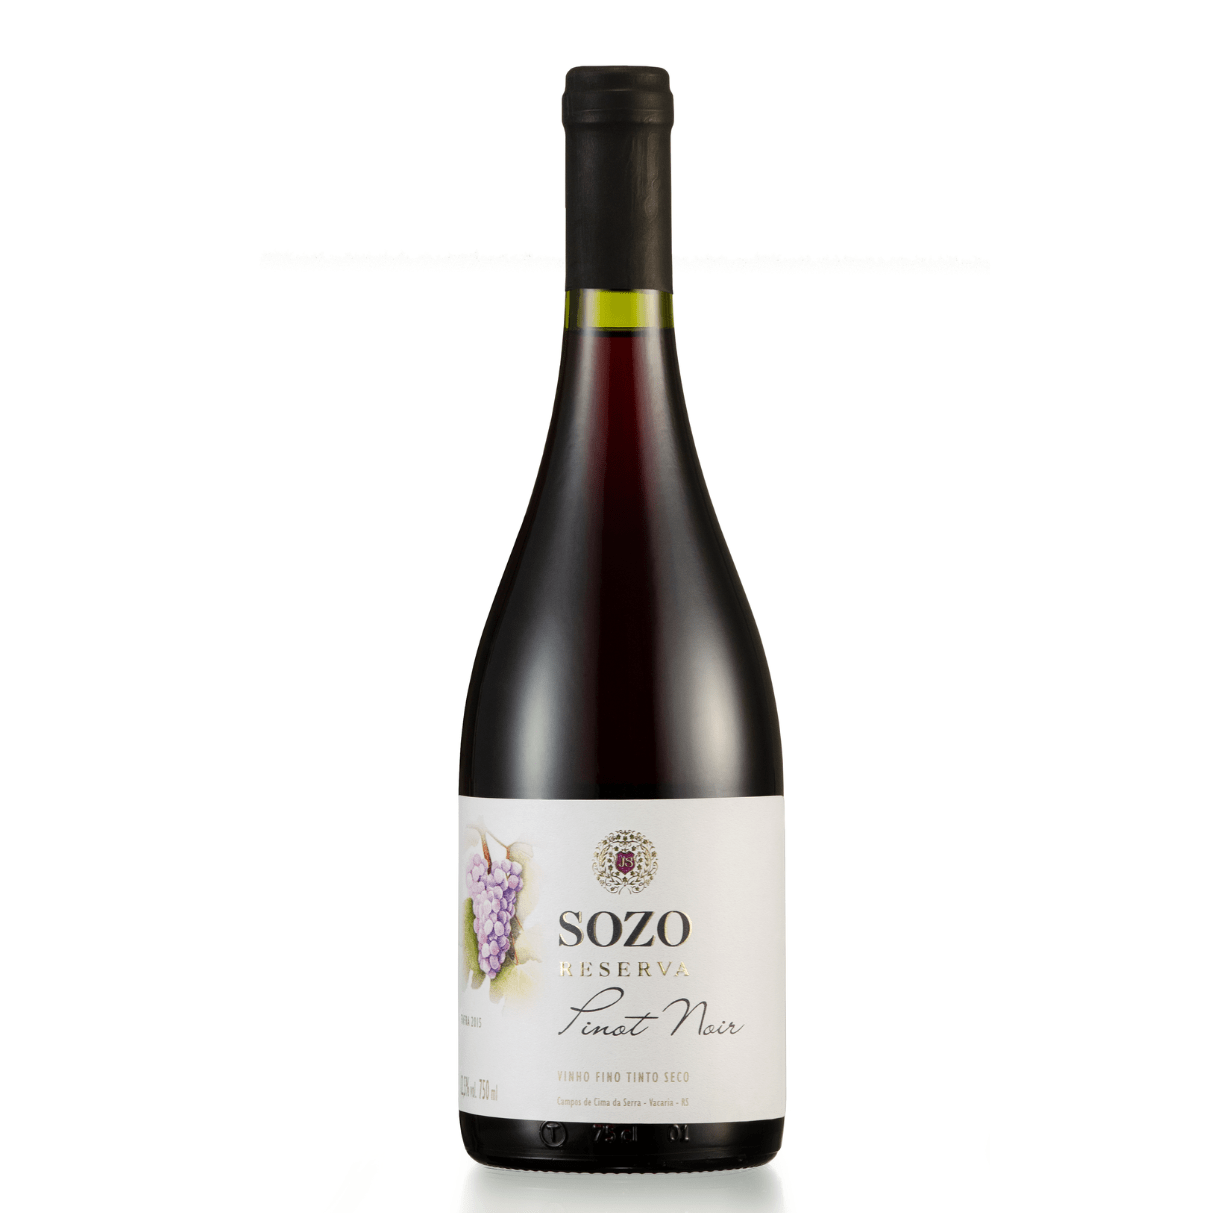 SOZO Reserva Pinot Noir 2015